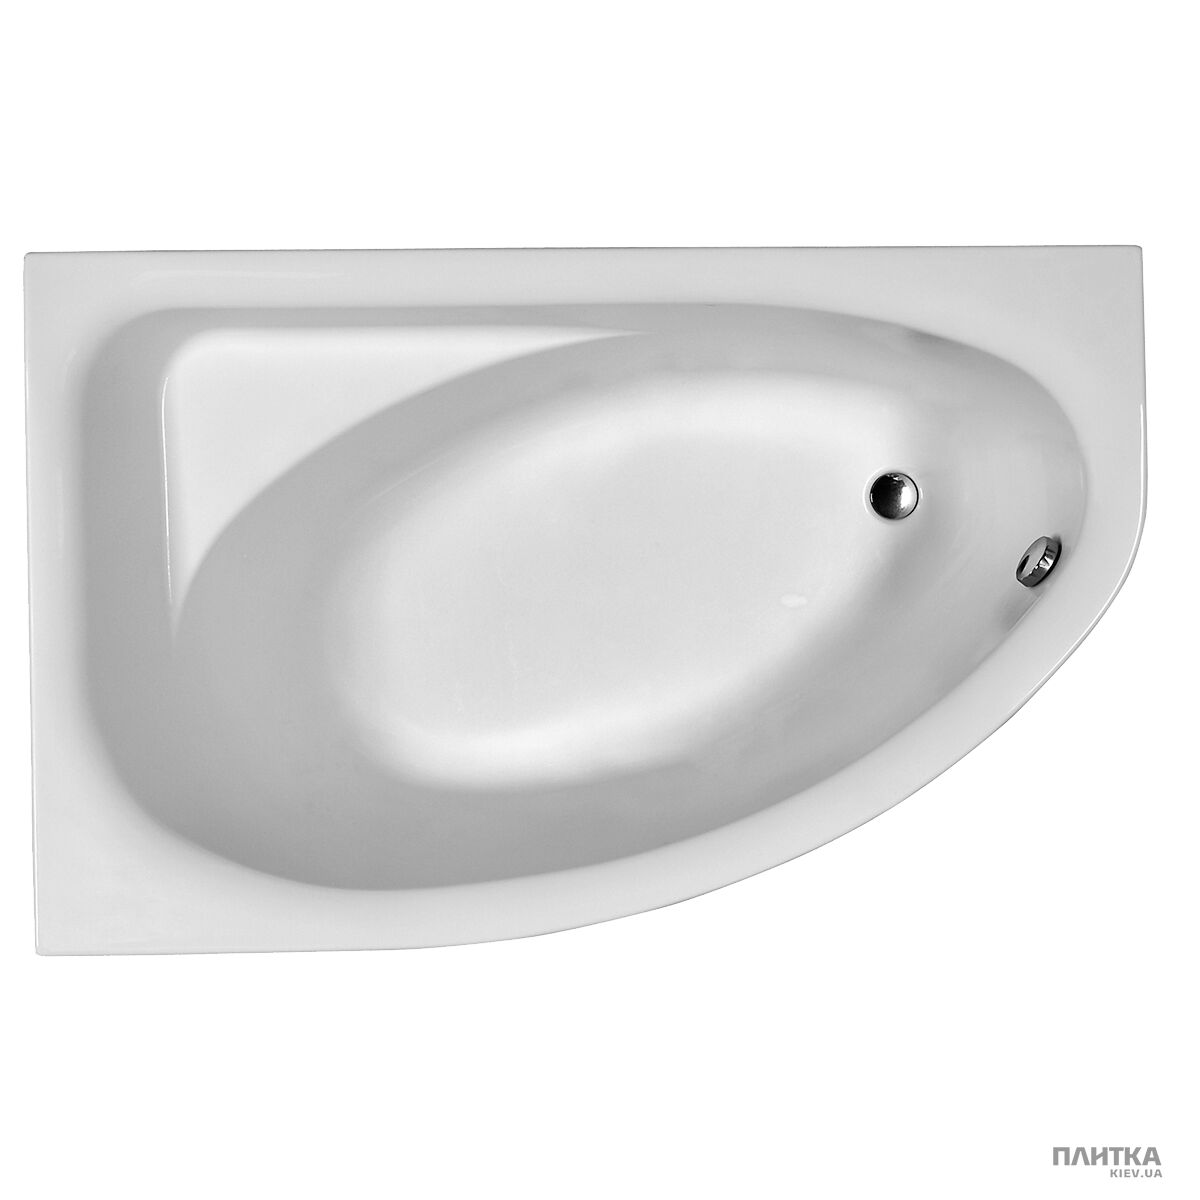 Акриловая ванна Kolo Spring XWA307100G SPRING L асимметричная ванна, левая 170 x 100 см с сифоном Geberit 150.520.21.1. + ножки SN7 белый